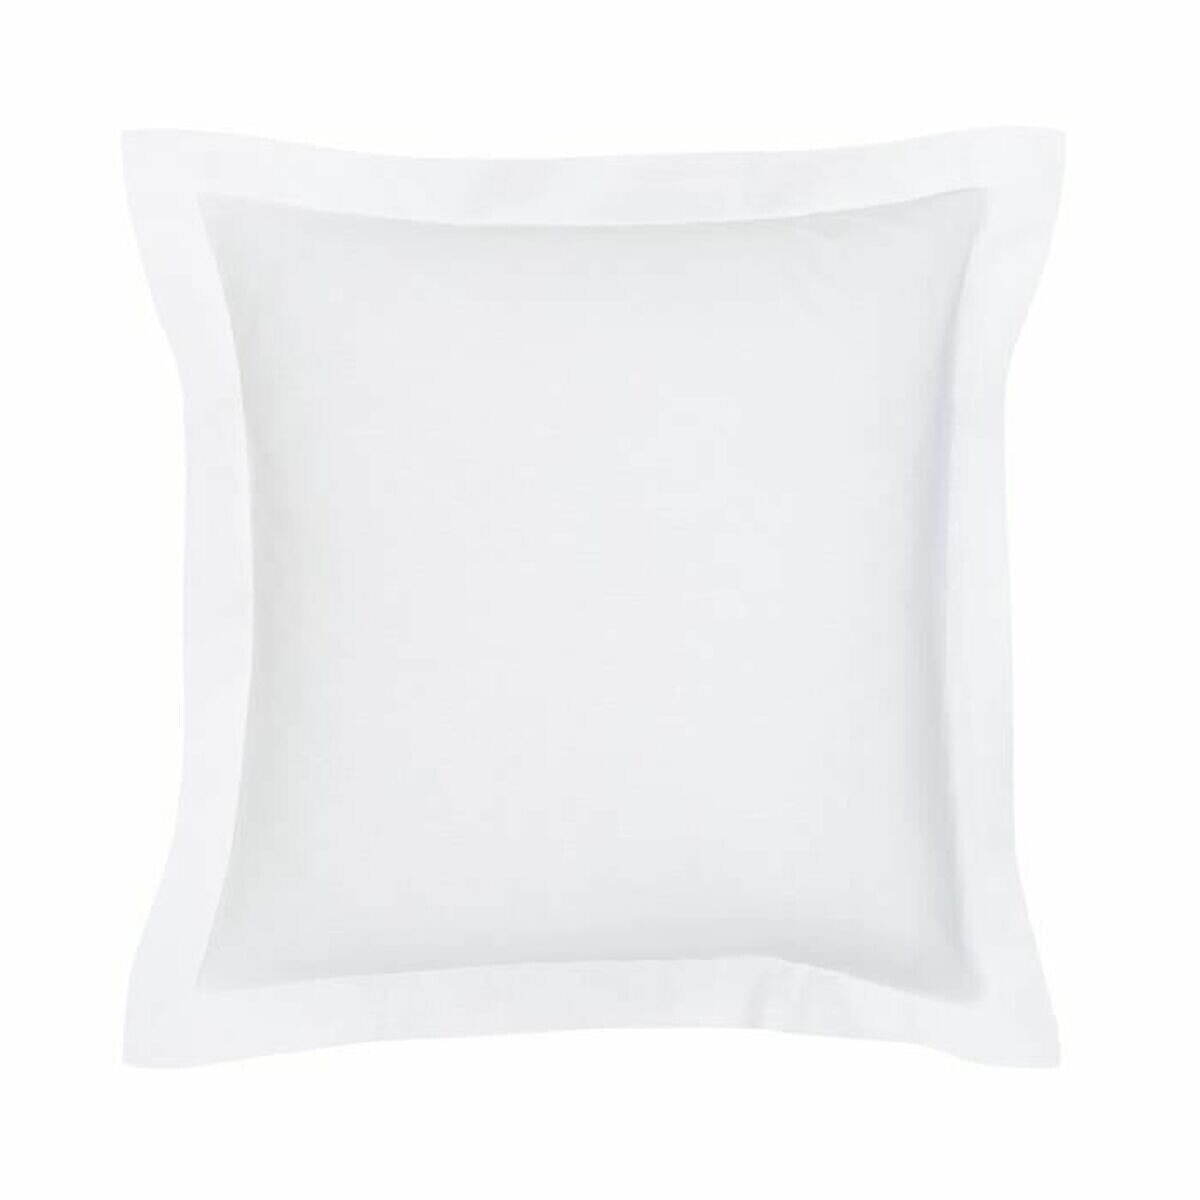 Pillowcase TODAY Chalk White 63 x 63 cm